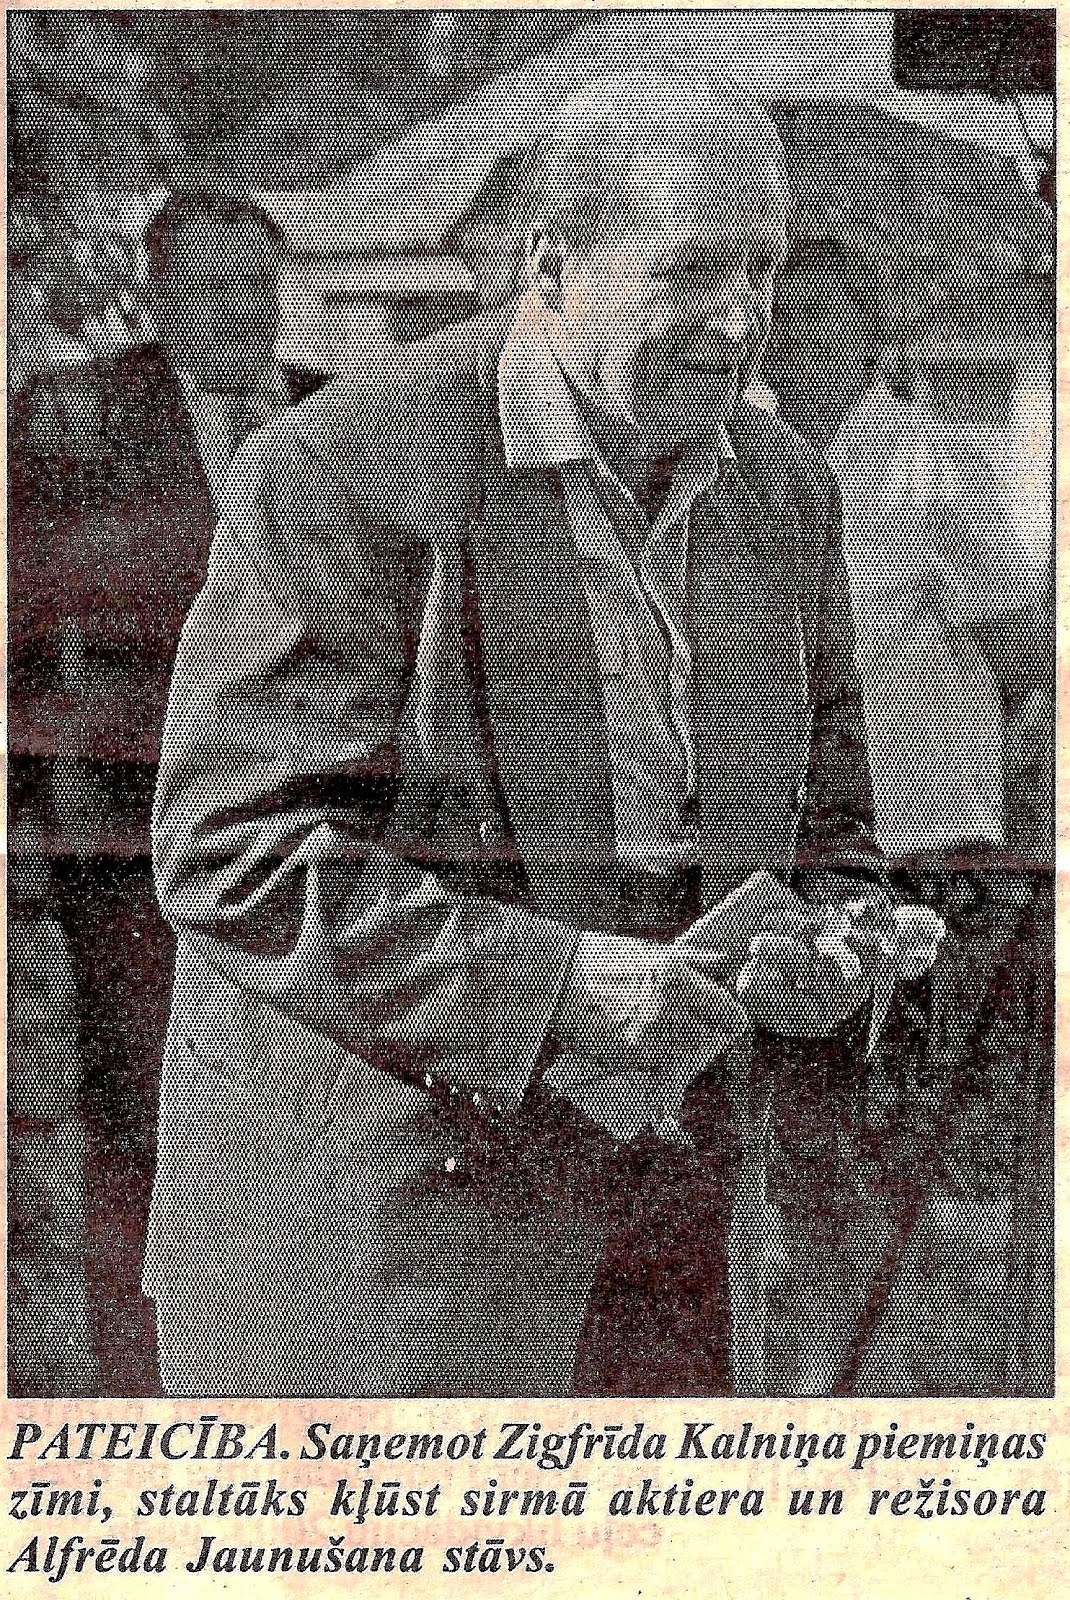 Alfrēds Jaunušāns 2000. gada 5. augustā , saņemot Zigfrīda Kalniņa piemiņas zīmi